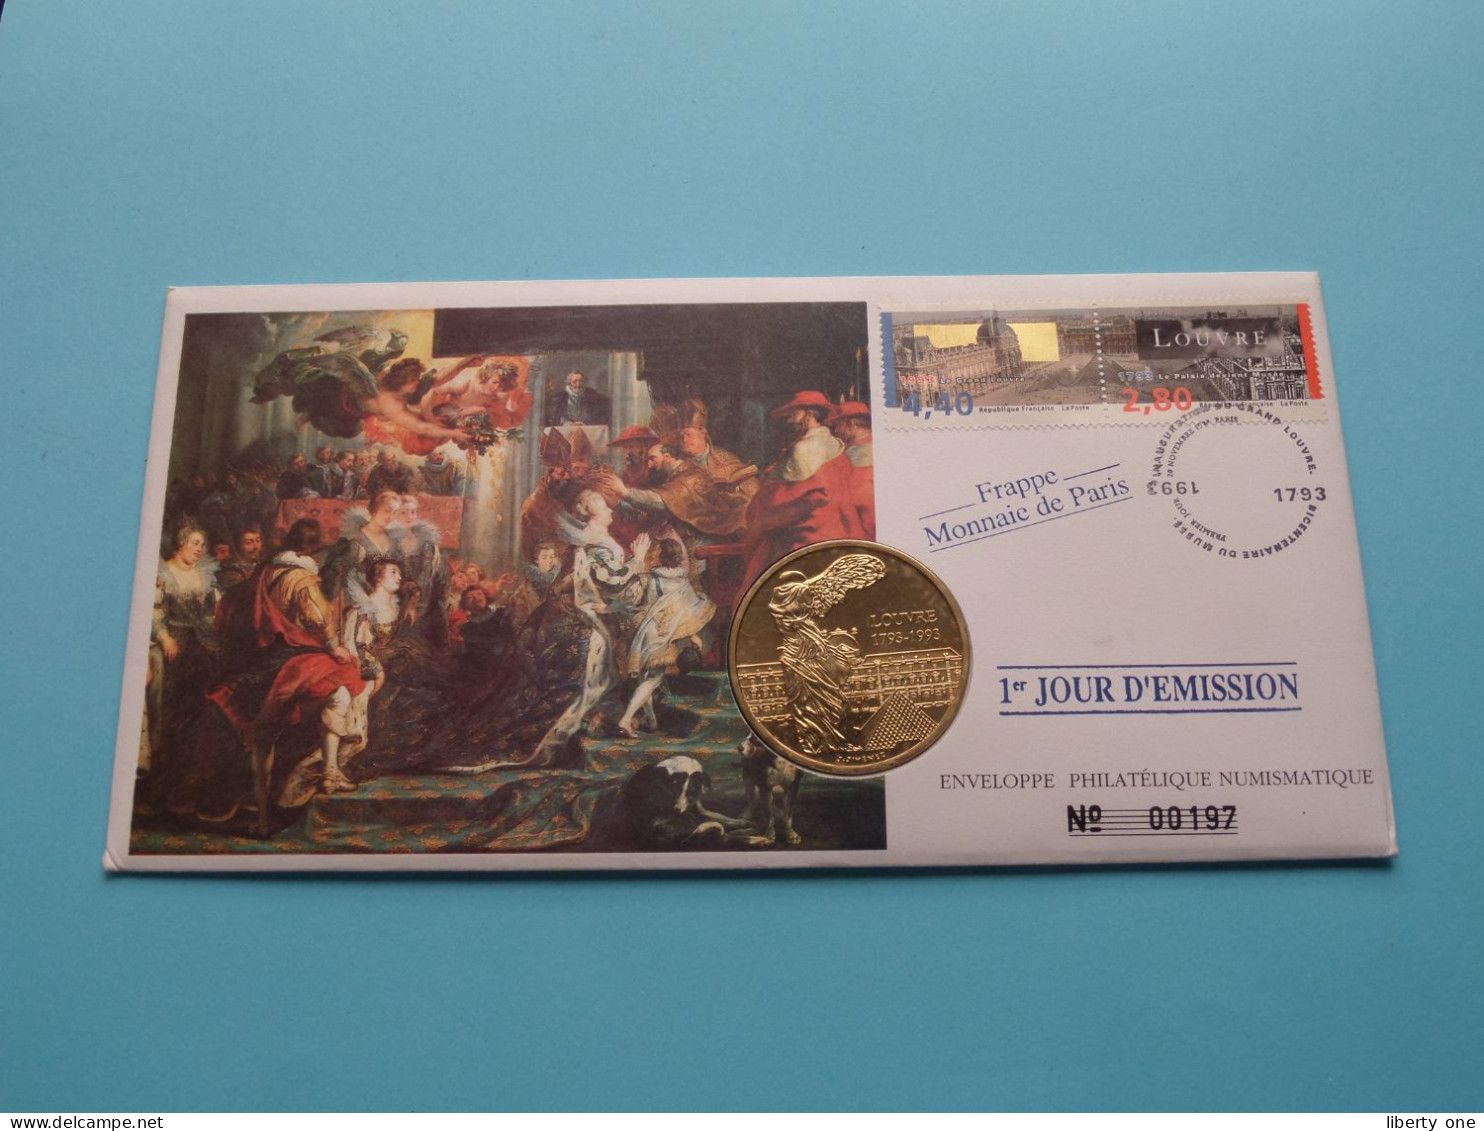 EUROPA Louvre 1793-1993 ( Voir Scans ) Enveloppe Numismatique Monnaie De Paris N° 00197 > 1993 > Numislettre ! - Souvenir-Medaille (elongated Coins)